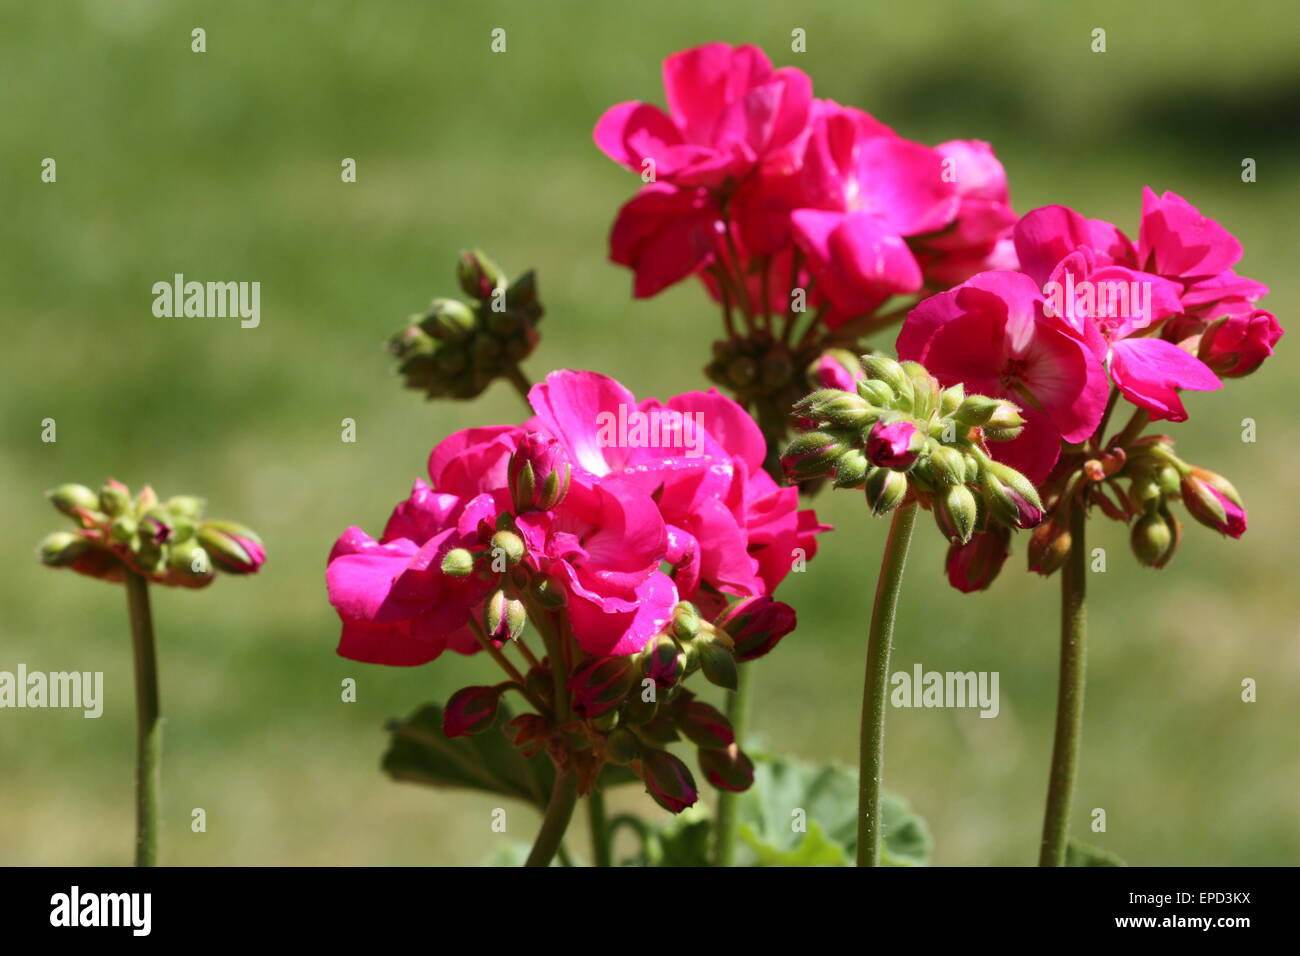 Rosa geranio flores y capullos, en temporada de verano Foto de stock